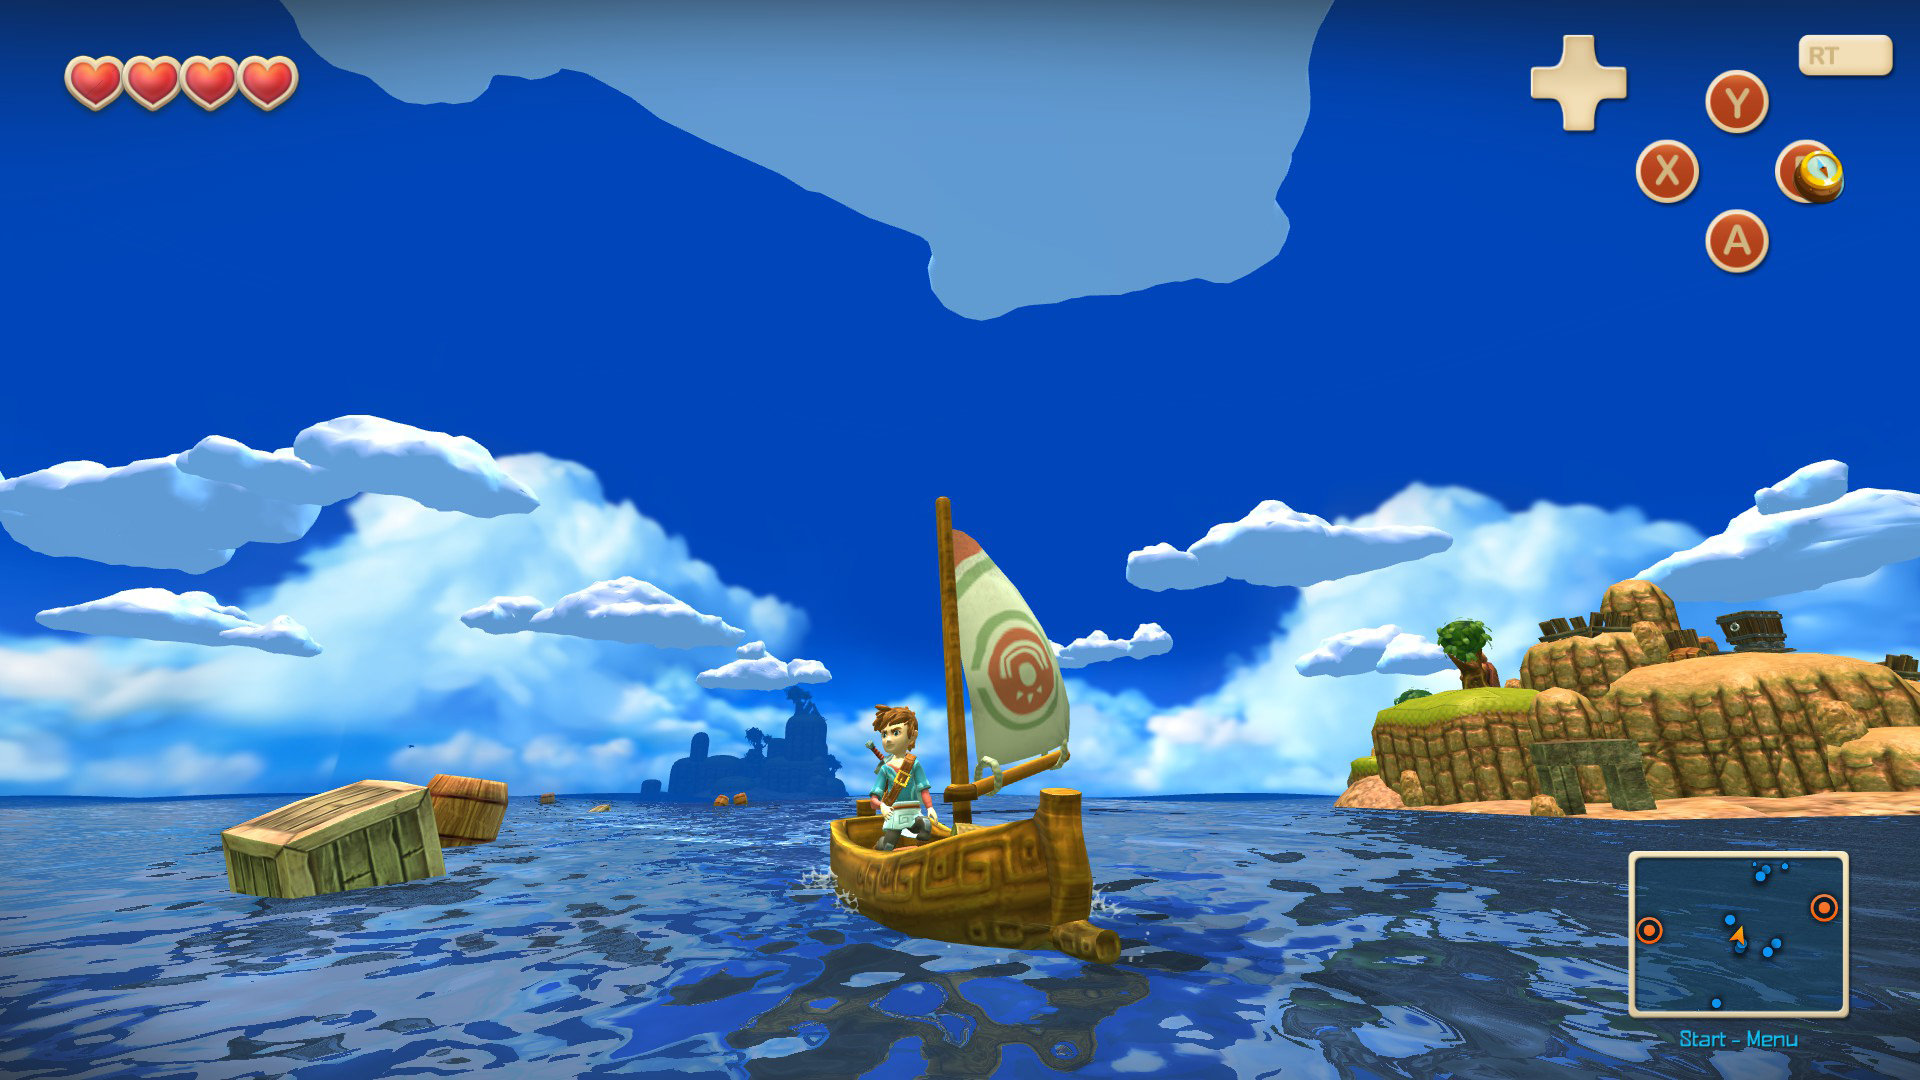 Nintendo sea of. Oceanhorn: Monster of Uncharted Seas. Oceanhorn 2. Oceanhorn Monster of Uncharted Seas PS Vita. Oceanhorn PS Vita.